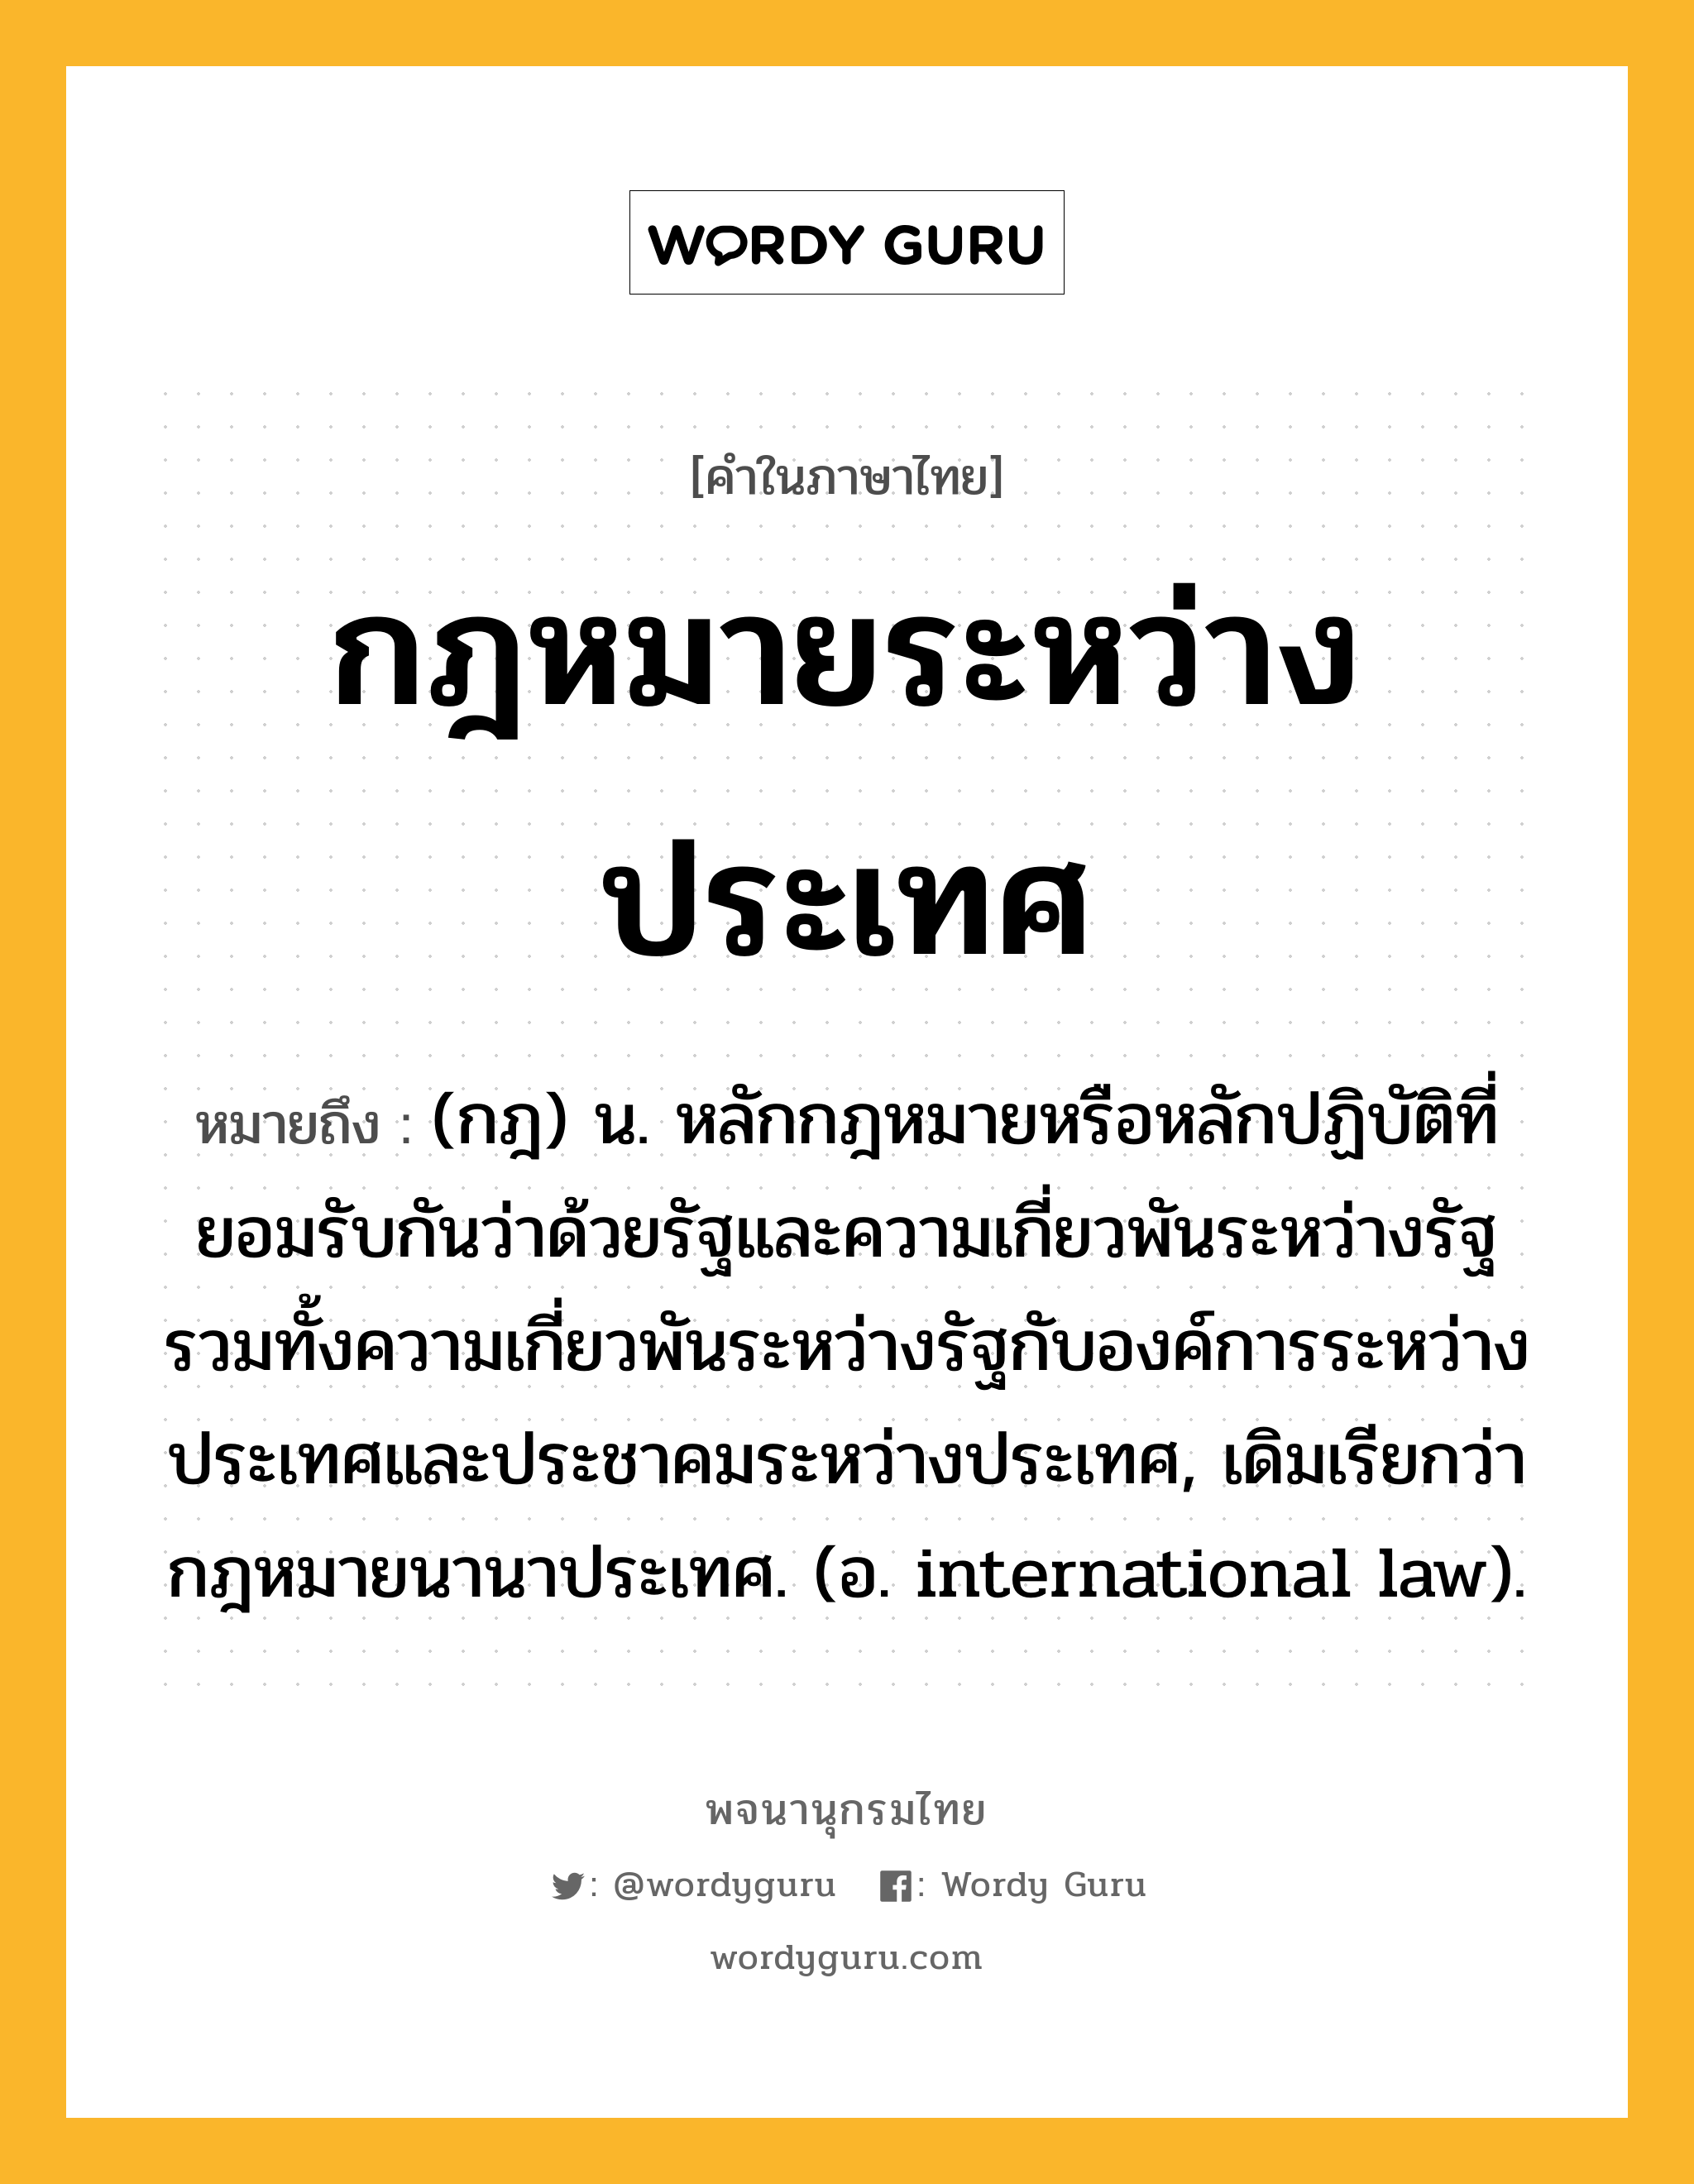 กฎหมายระหว่างประเทศ ความหมาย หมายถึงอะไร?, คำในภาษาไทย กฎหมายระหว่างประเทศ หมายถึง (กฎ) น. หลักกฎหมายหรือหลักปฏิบัติที่ยอมรับกันว่าด้วยรัฐและความเกี่ยวพันระหว่างรัฐ รวมทั้งความเกี่ยวพันระหว่างรัฐกับองค์การระหว่างประเทศและประชาคมระหว่างประเทศ, เดิมเรียกว่า กฎหมายนานาประเทศ. (อ. international law).